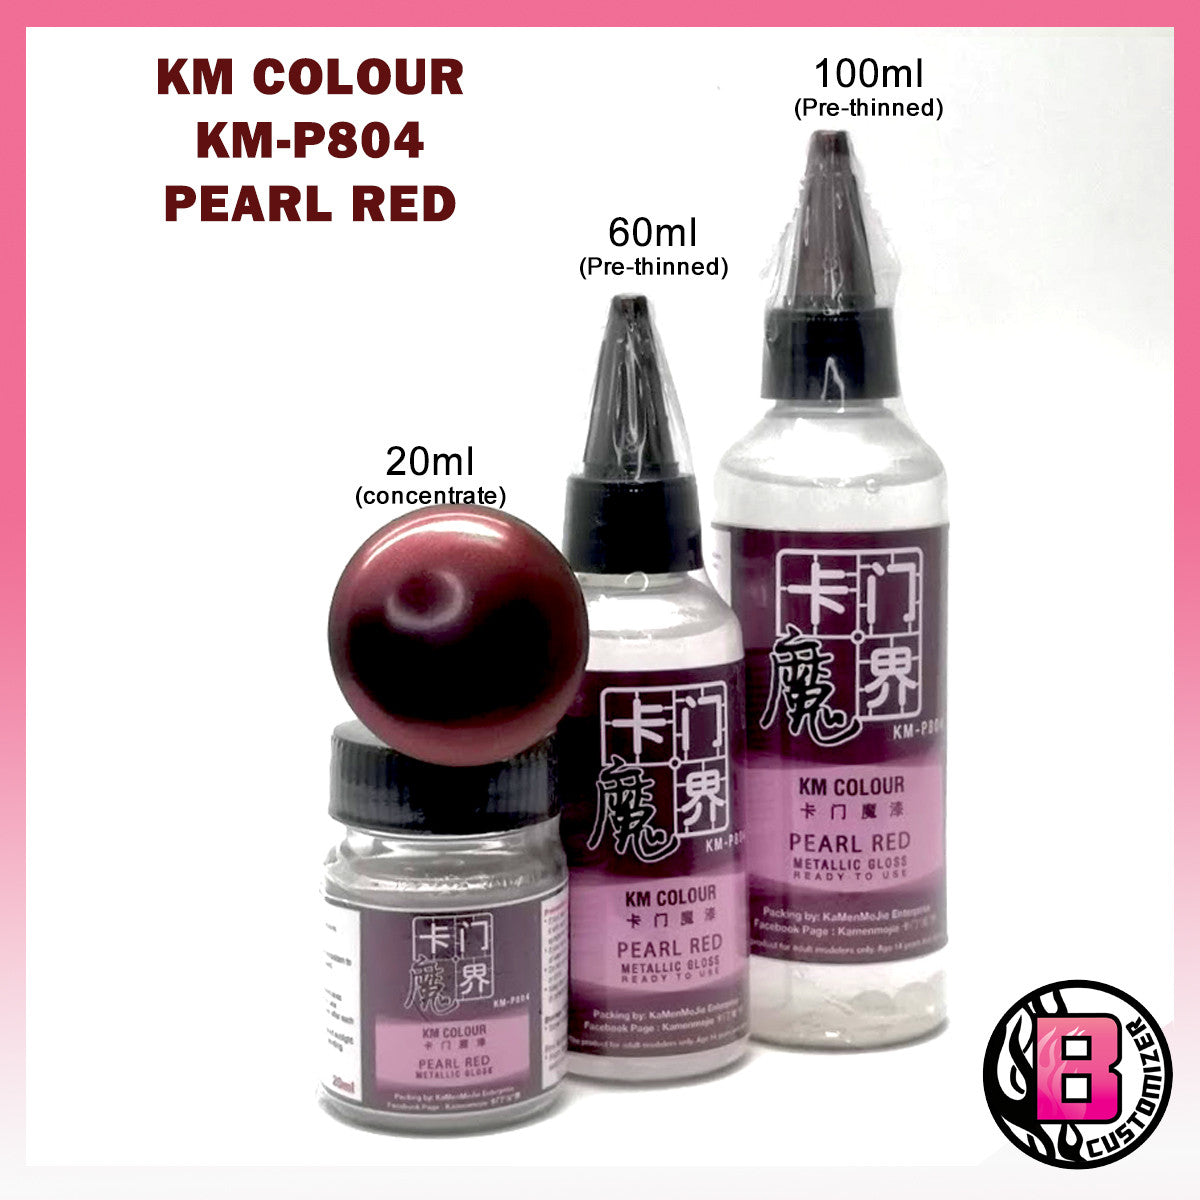 KM Colour Pearl Red (KM-P804)